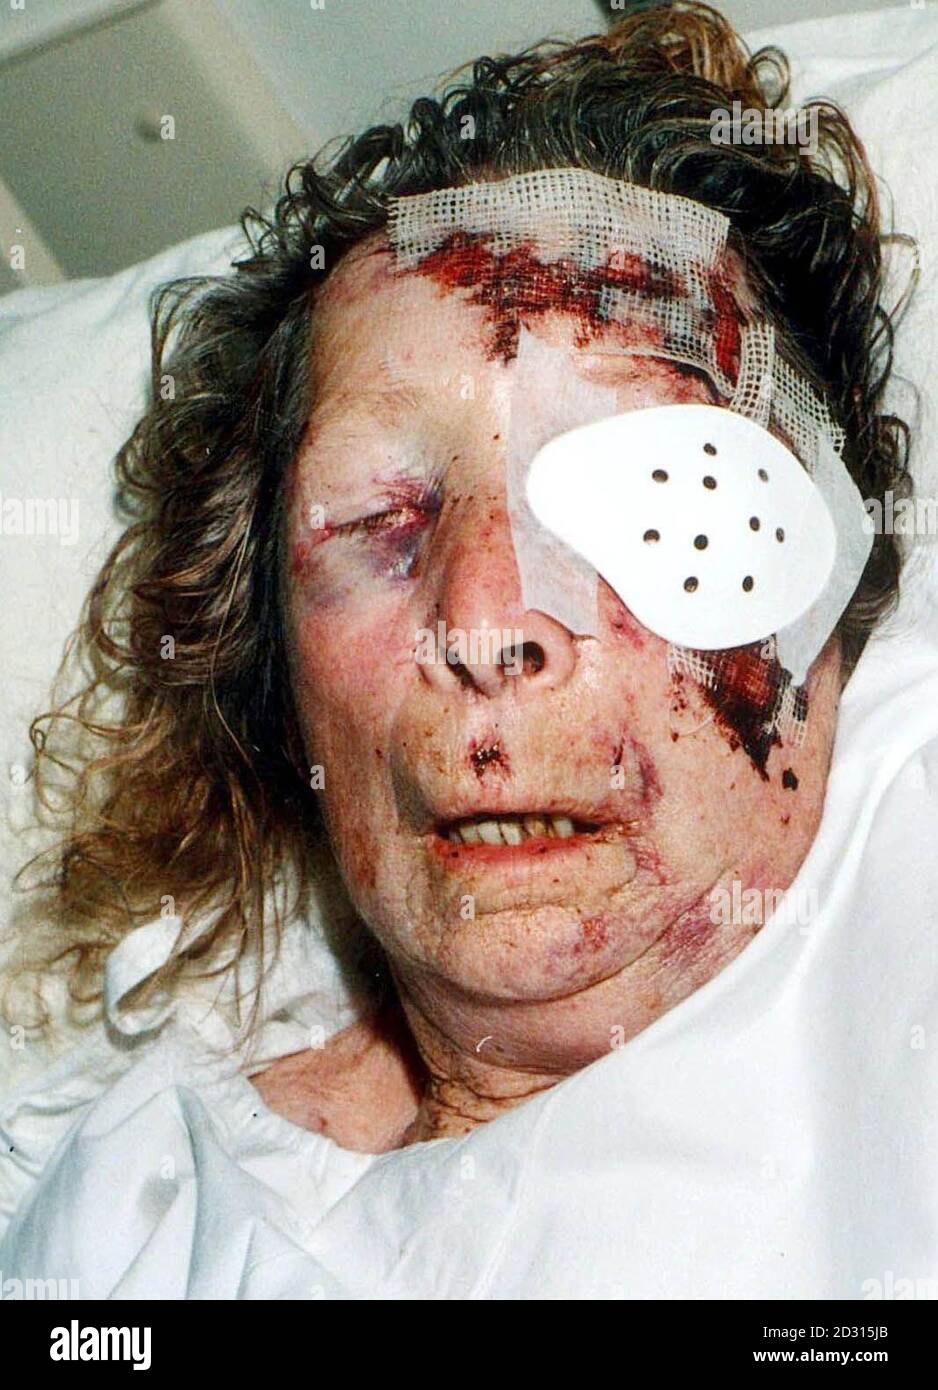 Il pensionato di 87 anni Edith Chapman, che si trovava in una condizione critica al Stepping Hill Hospital di Stockport, dopo un brutale attacco da parte di un ladro il 1/9/00. Foto Stock